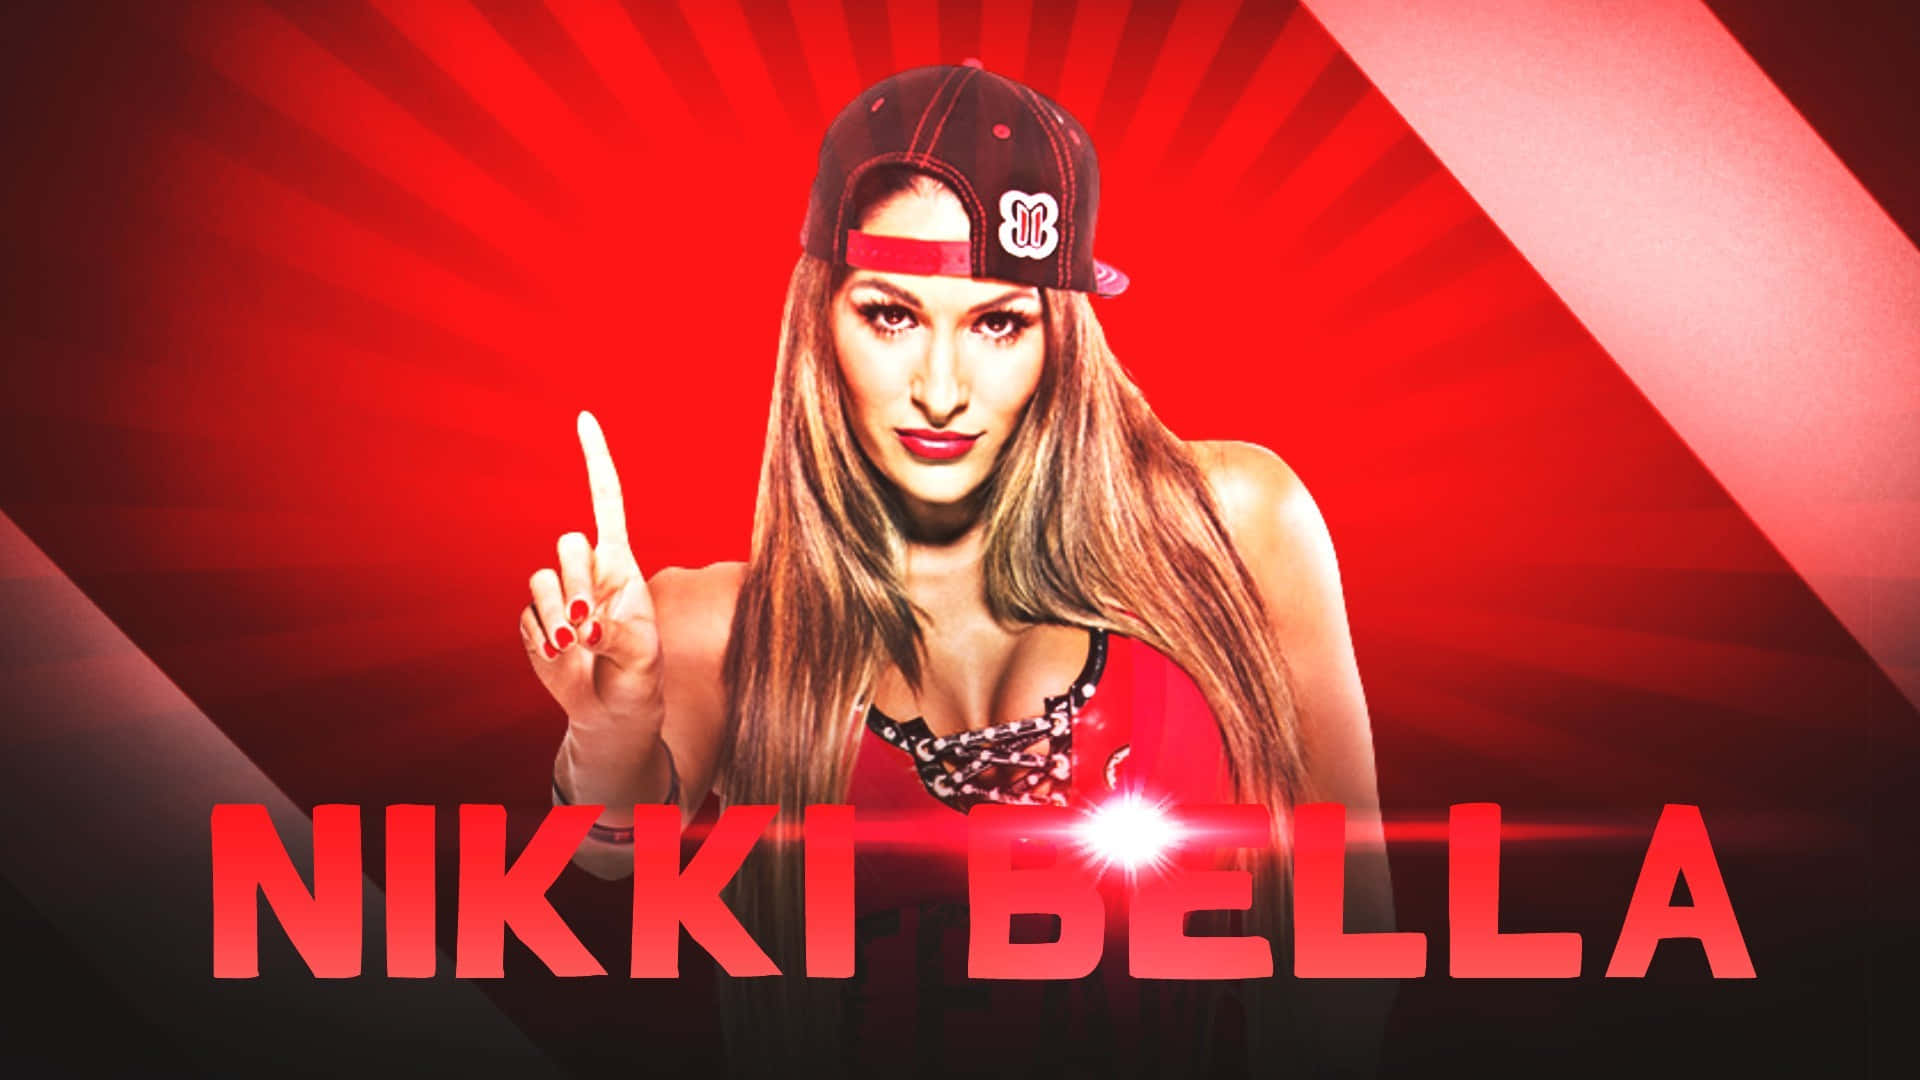 Nikki Bella W W E Diva Promotional Graphic Wallpaper